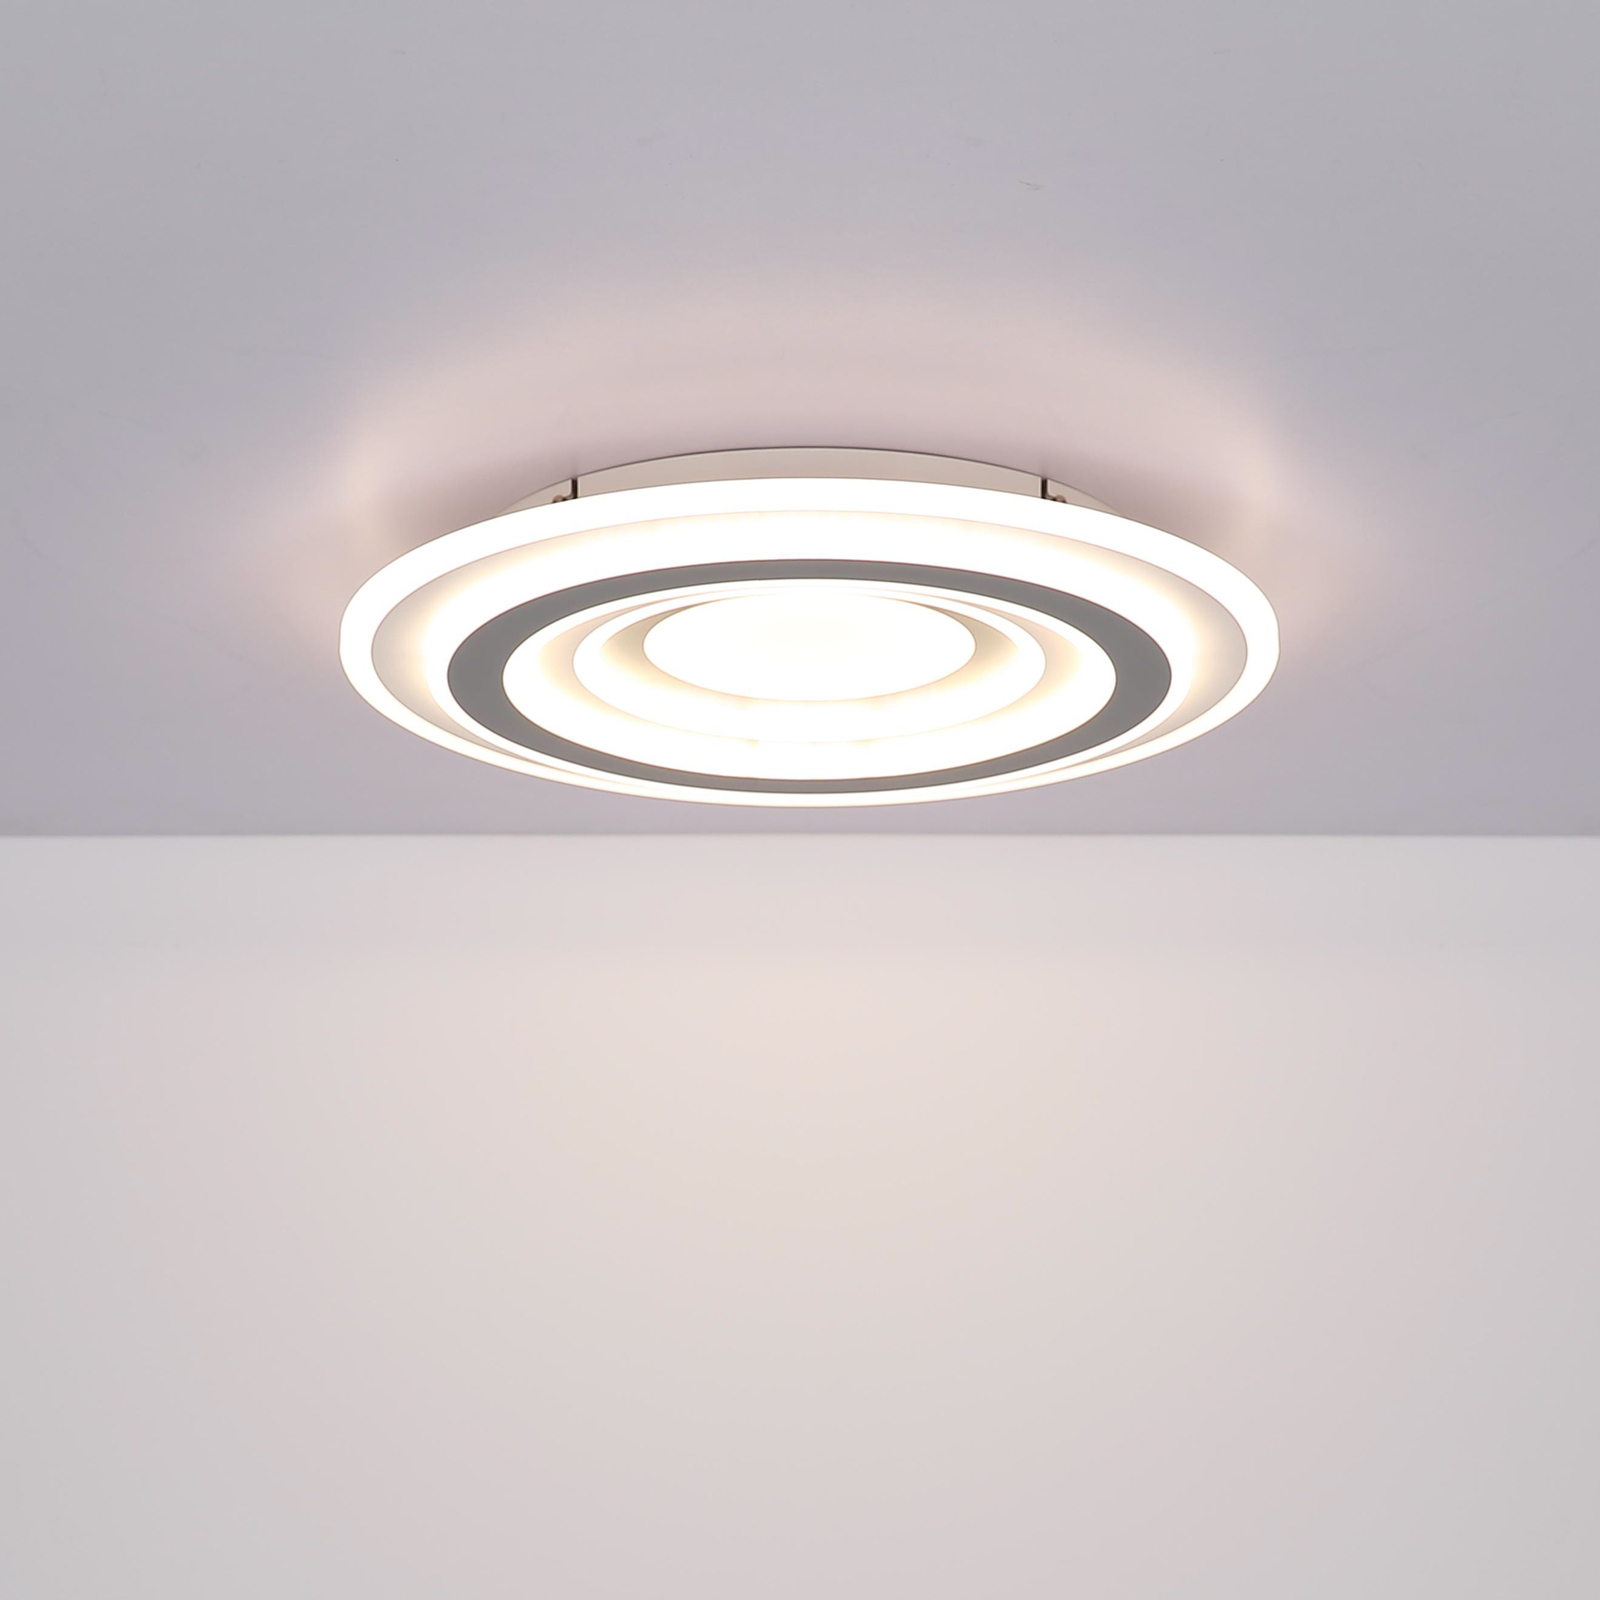 LED-Deckenleuchte Sabatino, weiß/anthrazit, Ø 48 cm, CCT